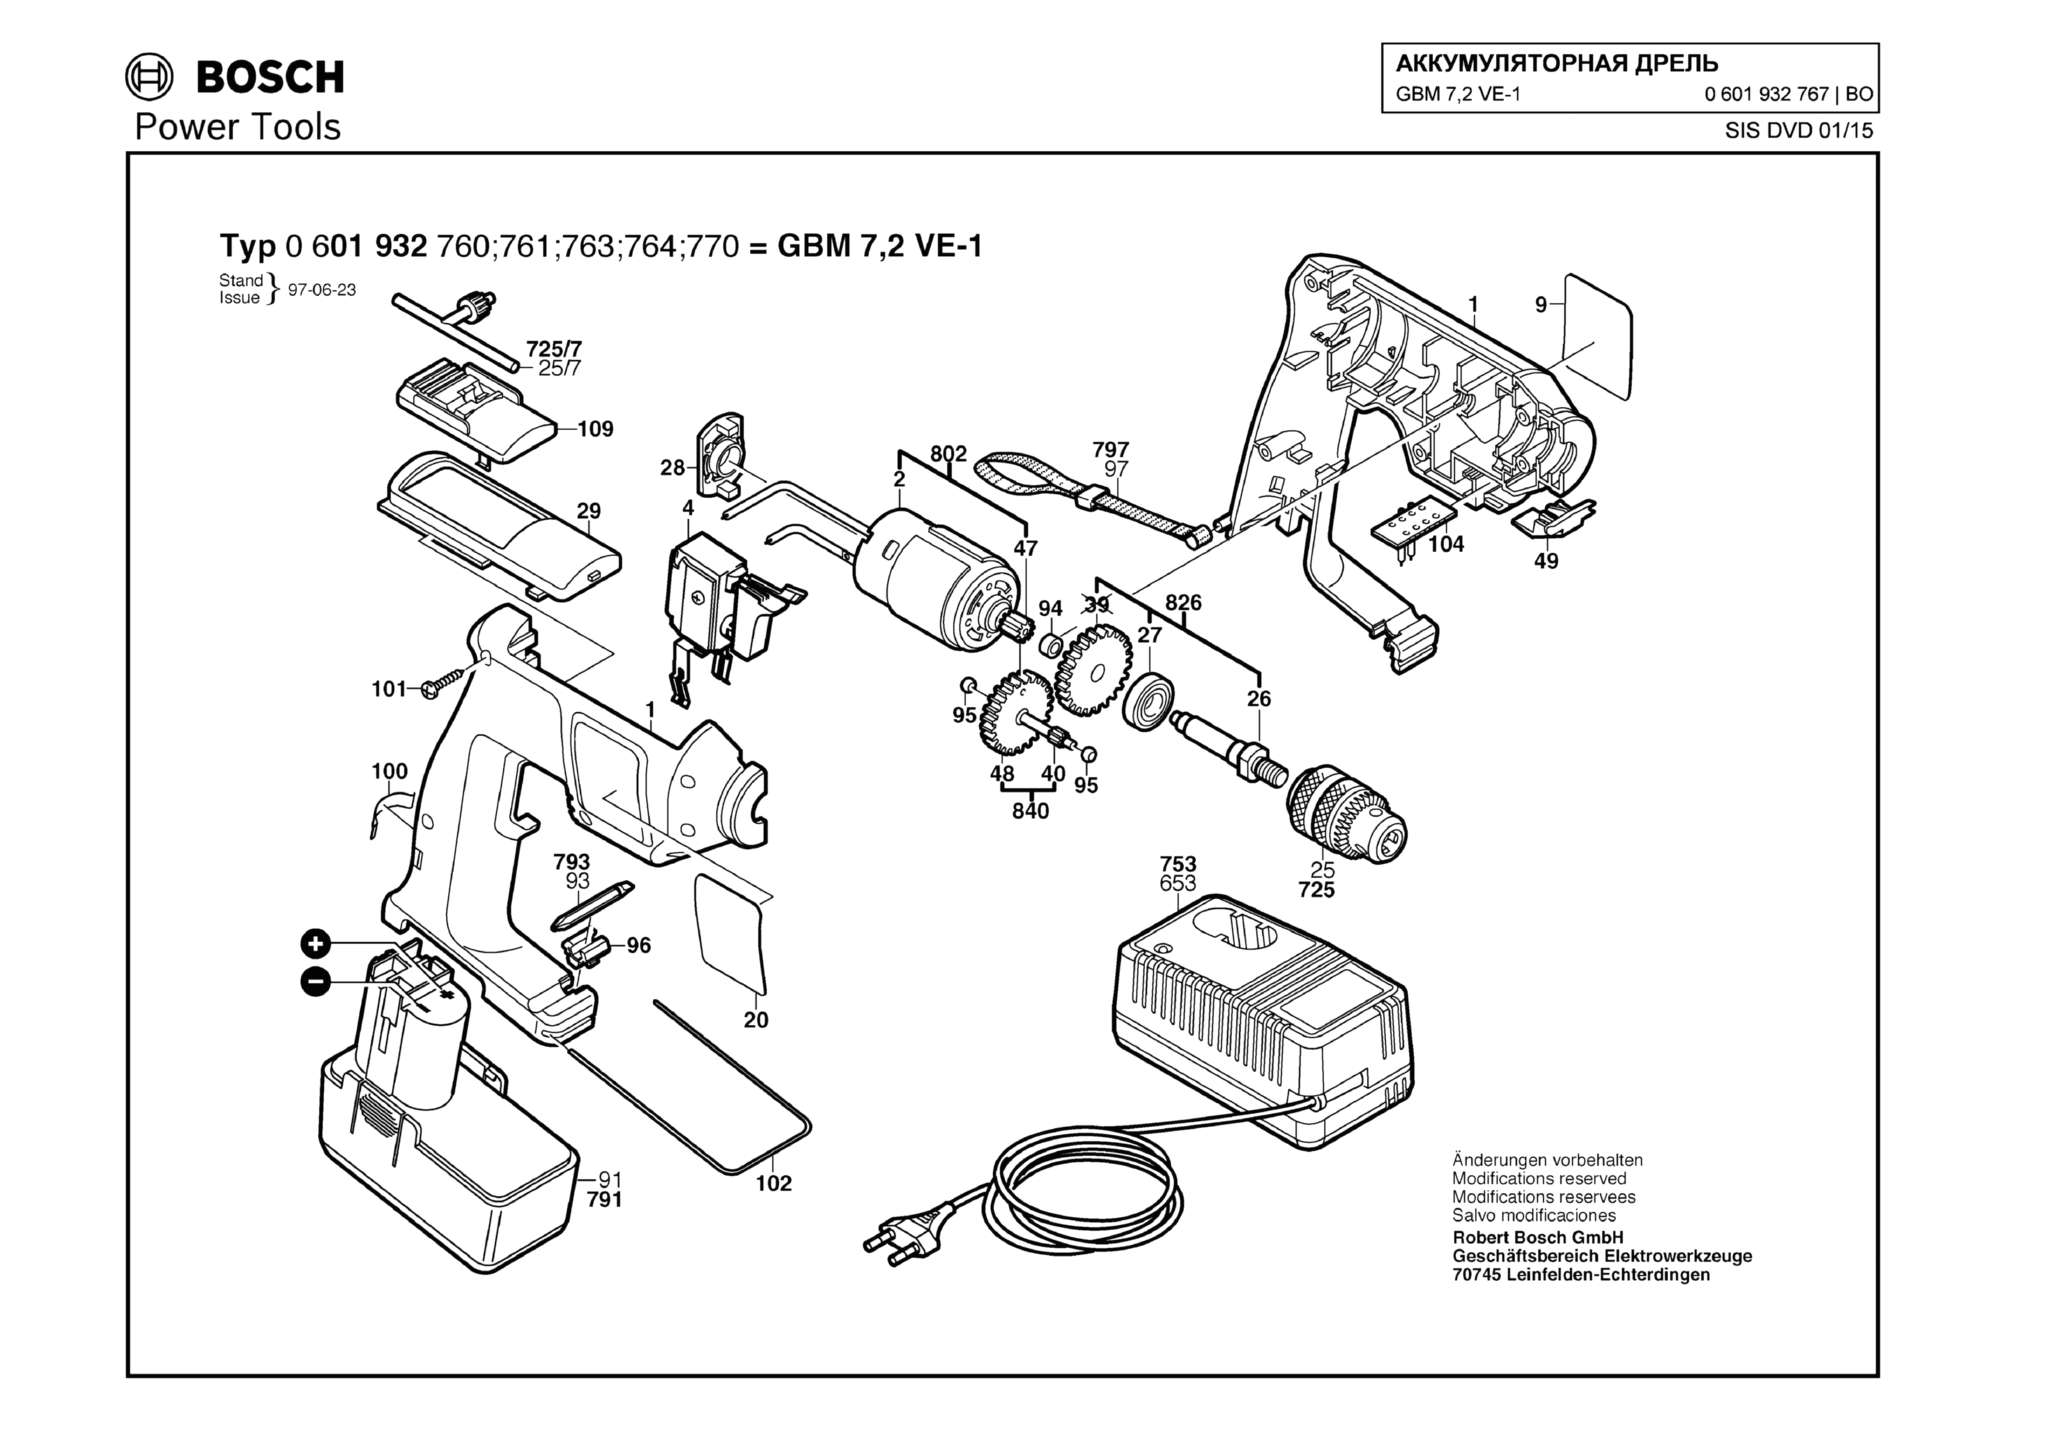 Запчасти, схема и деталировка Bosch GBM 7,2 VE-1 (ТИП 0601932767)